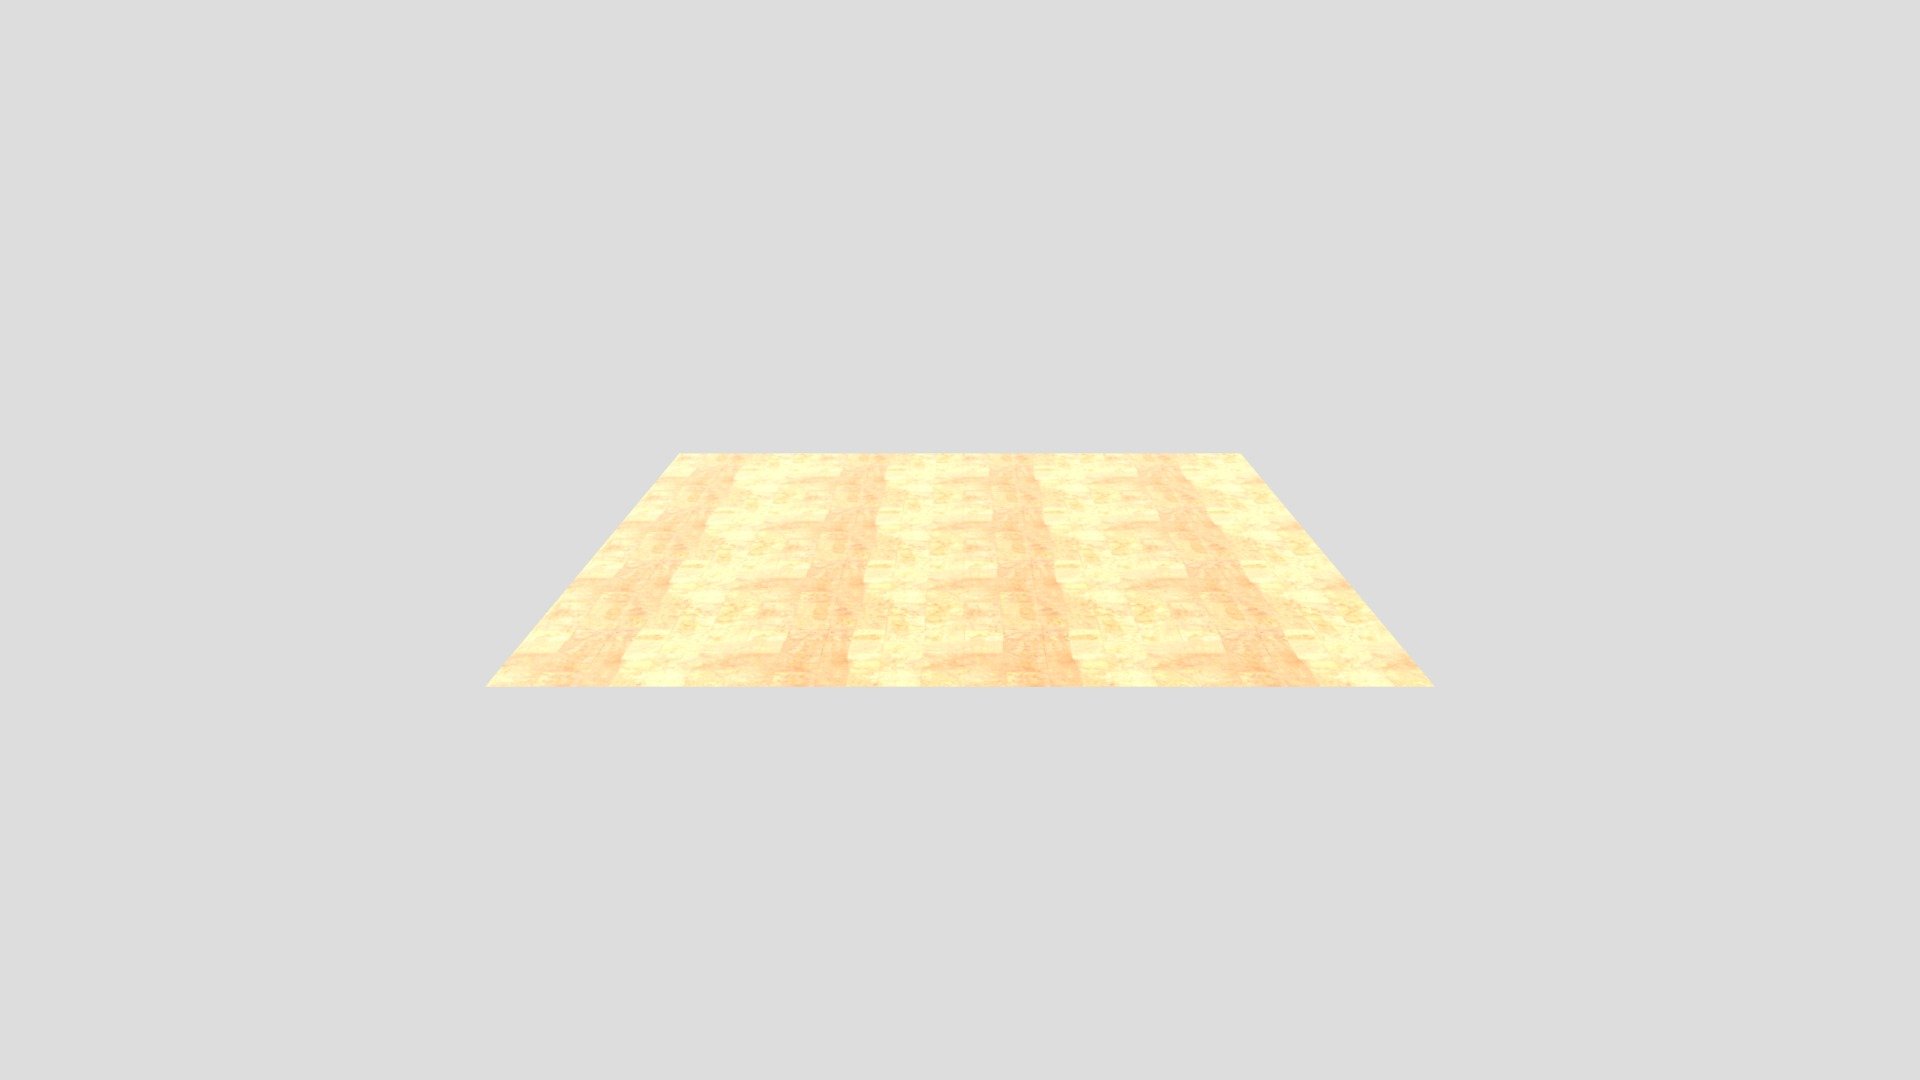 Floor - 3D model by alroberts1 [74a852d] - Sketchfab